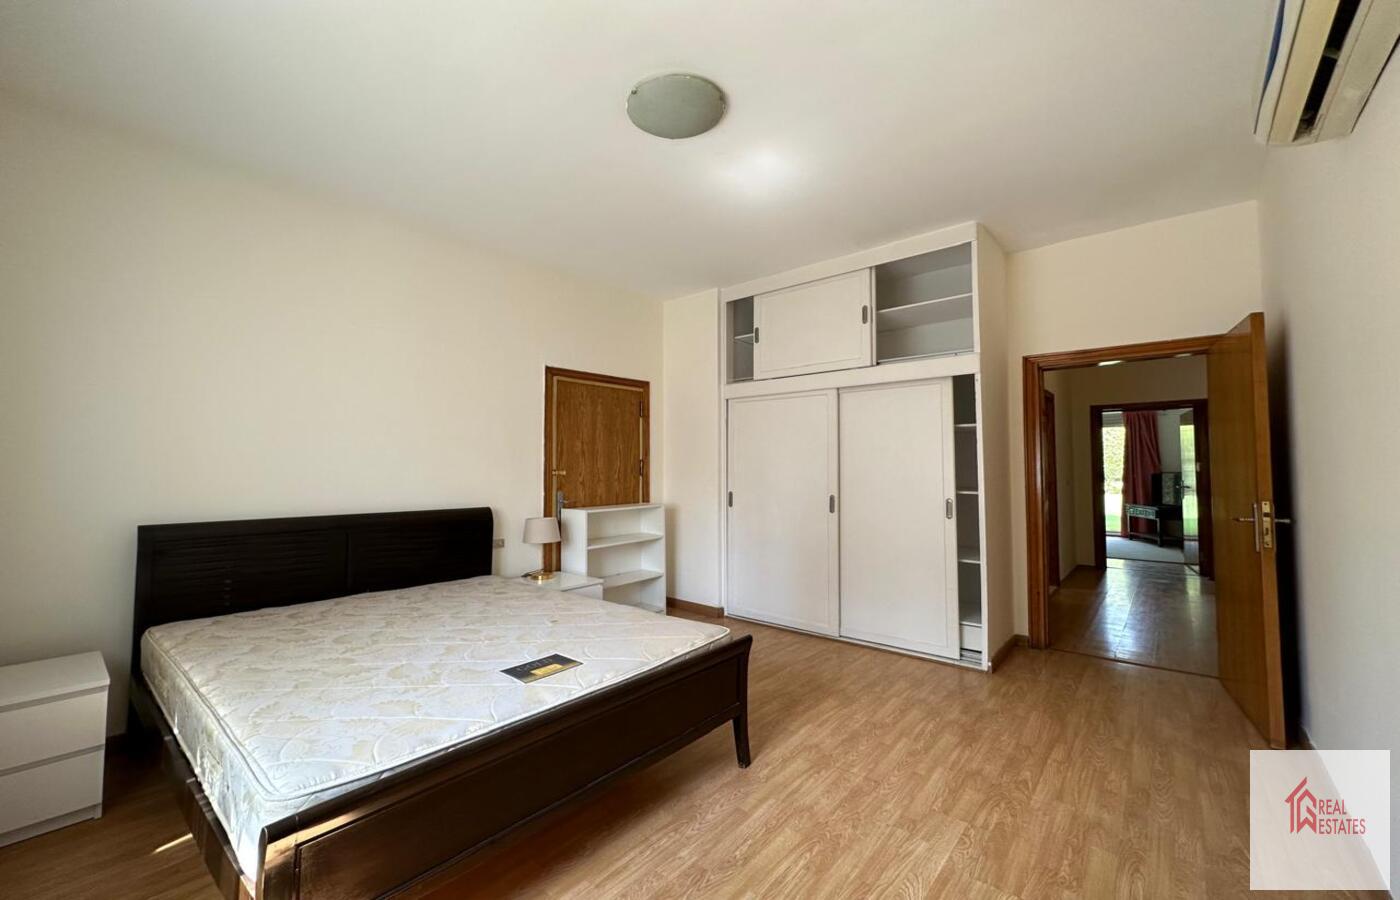 2. daire birinci katta 3 yatak odası 2 banyo çamaşırhane açık mutfaklı geniş salon ve havuzlu geniş bahçe. Kira 4200 USD